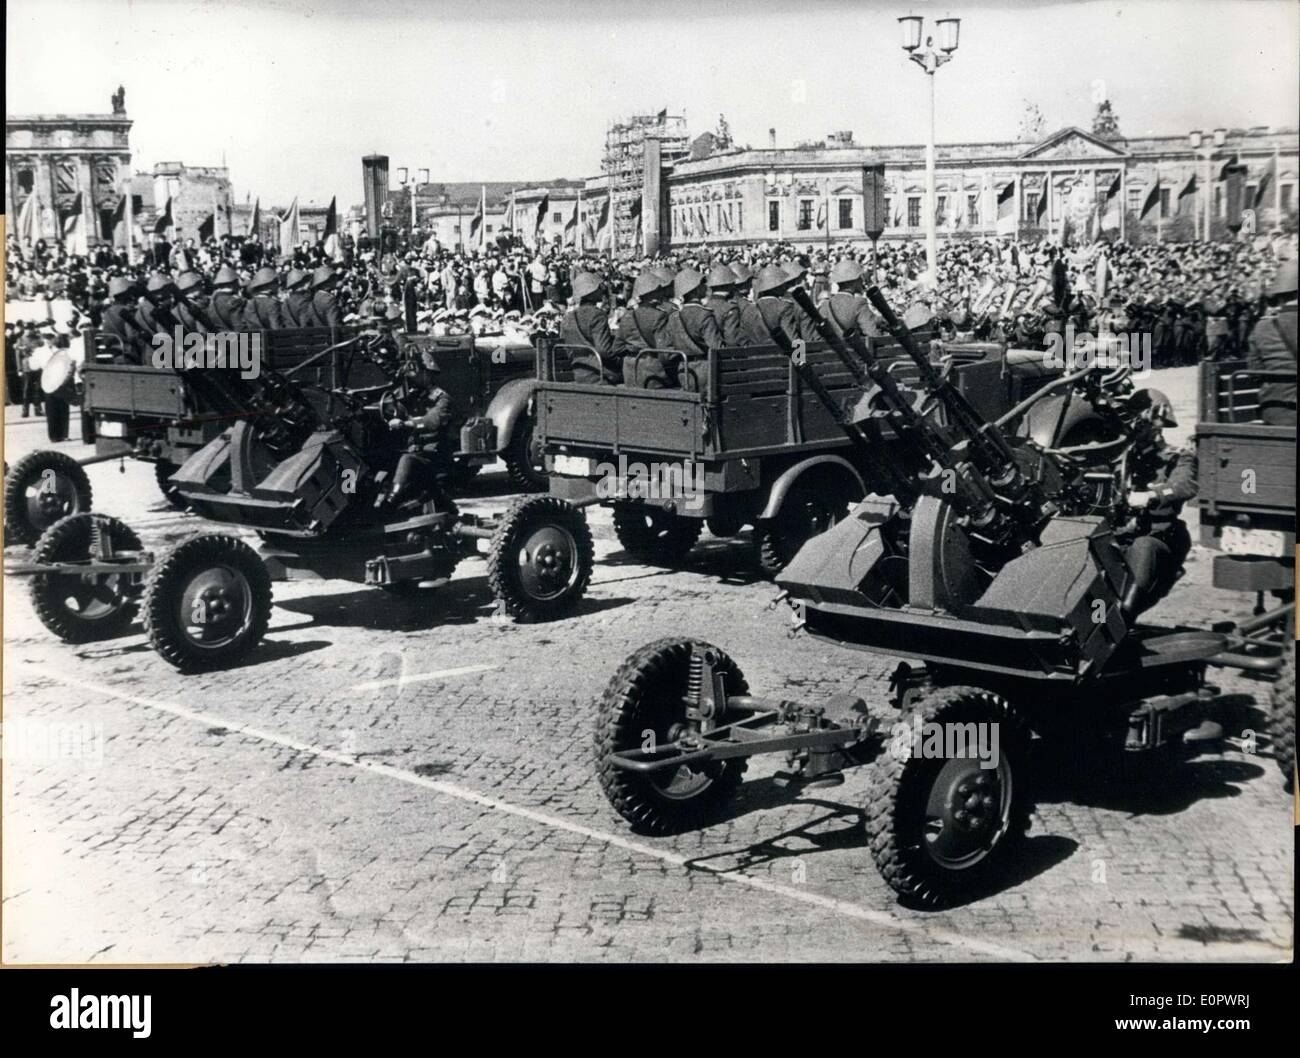 Janv. 05, 1957 - l'on voit ici sont des armes d'artillerie anti-aérienne et d'être montré pendant le défilé du 1er mai à Berlin Est. Vip soviétique étaient présents lors de la parade d'armes. Banque D'Images